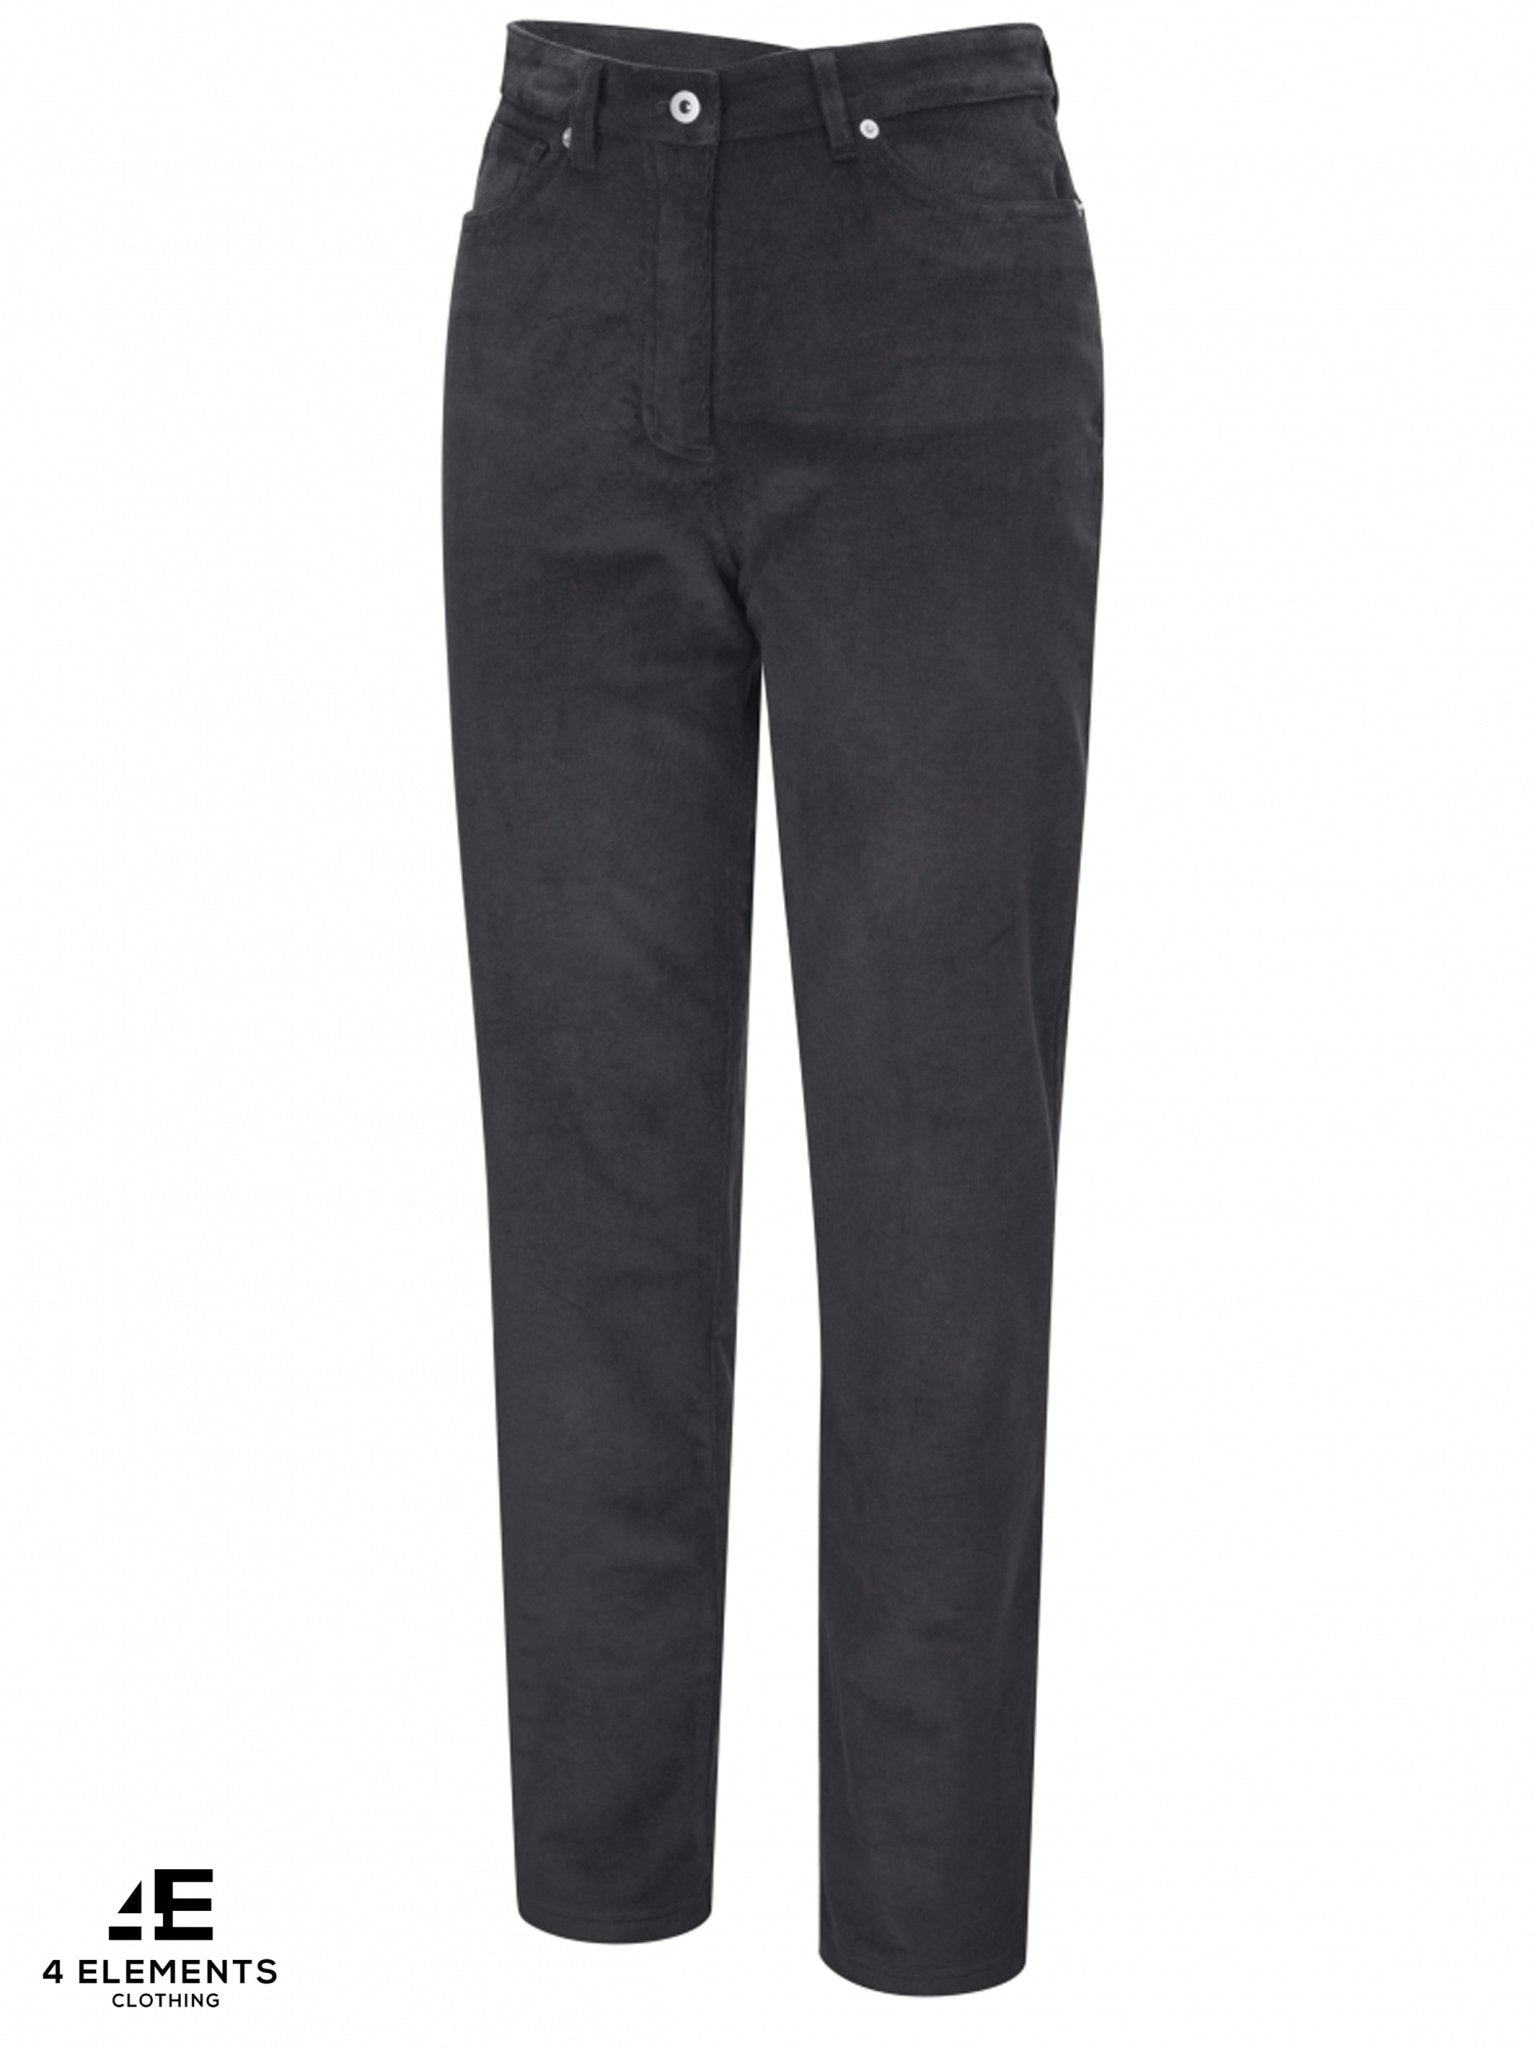 Trousers For Women: इन सुपर स्टाइलिश ट्राउजर में मिलेगा ट्रेंडी लुक,  वर्किंग वुमेन के लिए है बेस्ट च्वॉइस | trousers for women to get stylish  look | HerZindagi